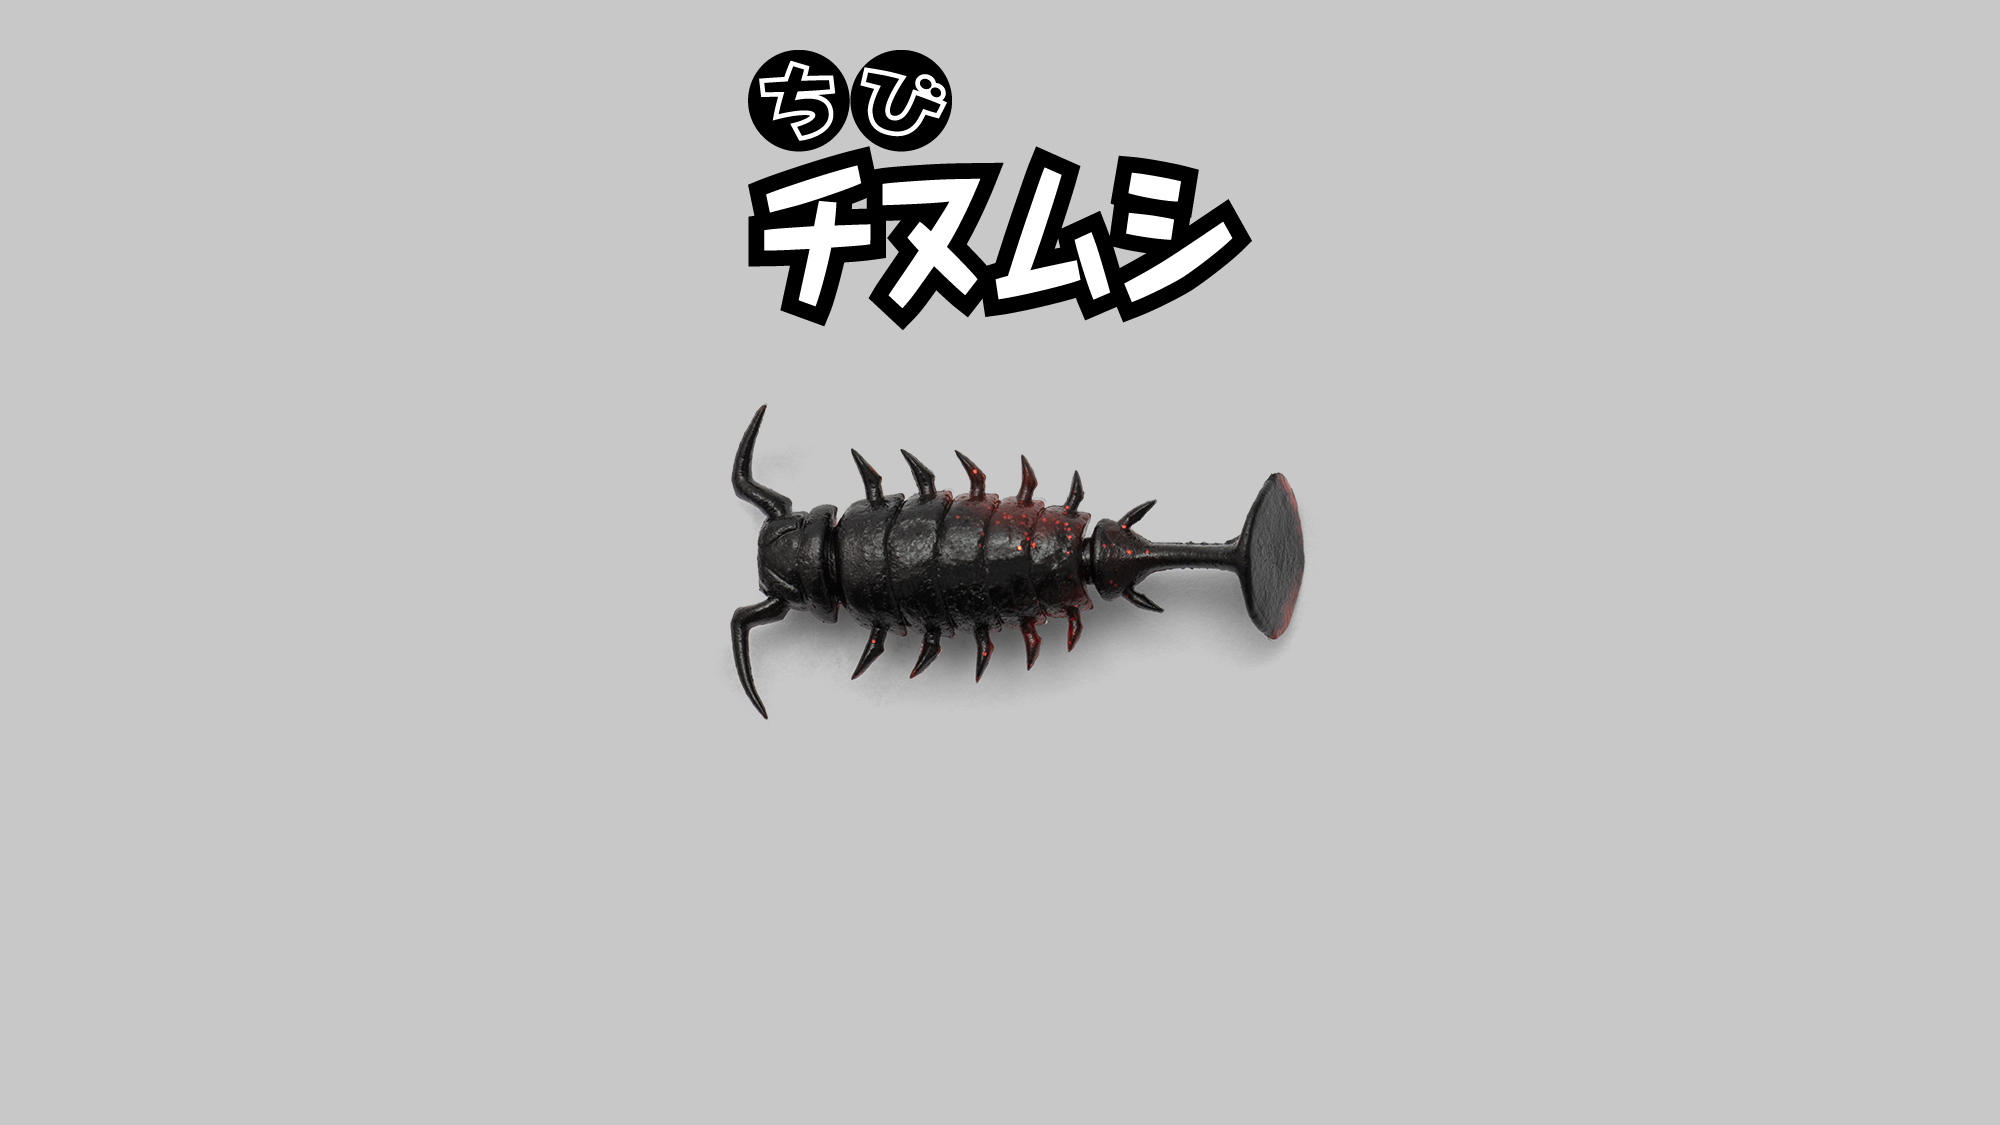 ちびチヌムシ 1.5″ CHIBI CHINUMUSHI 1.5″